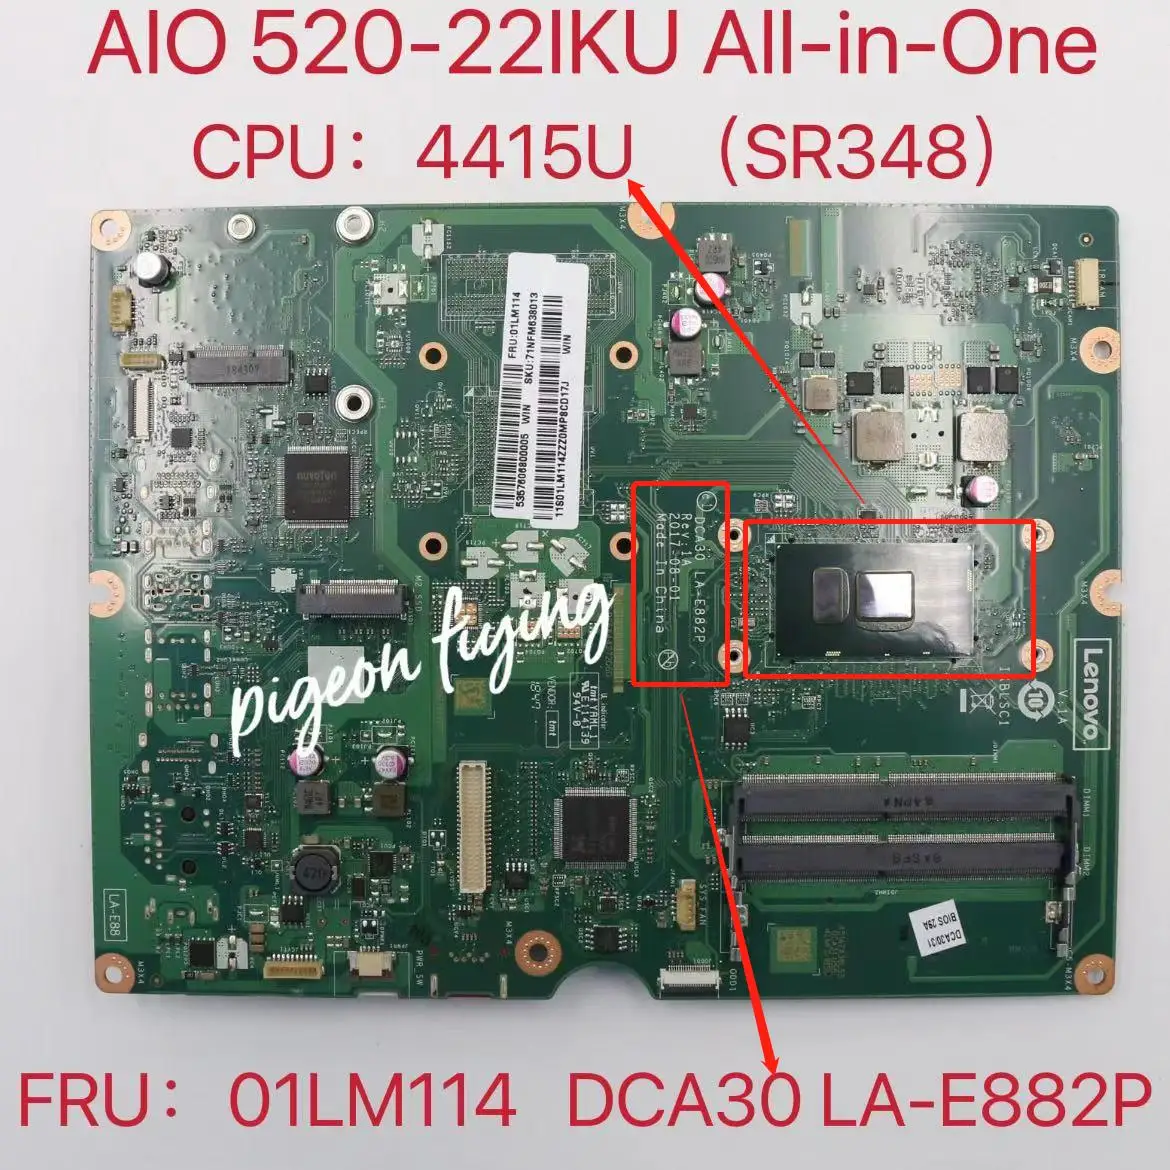 

Оригинальная материнская плата для ноутбука Lenovo ideacмежду AIO 520-22IKU все-в-одном Процессор: 4415U SR348 DDR4 FRU:01LM114 100% ТЕСТ ОК